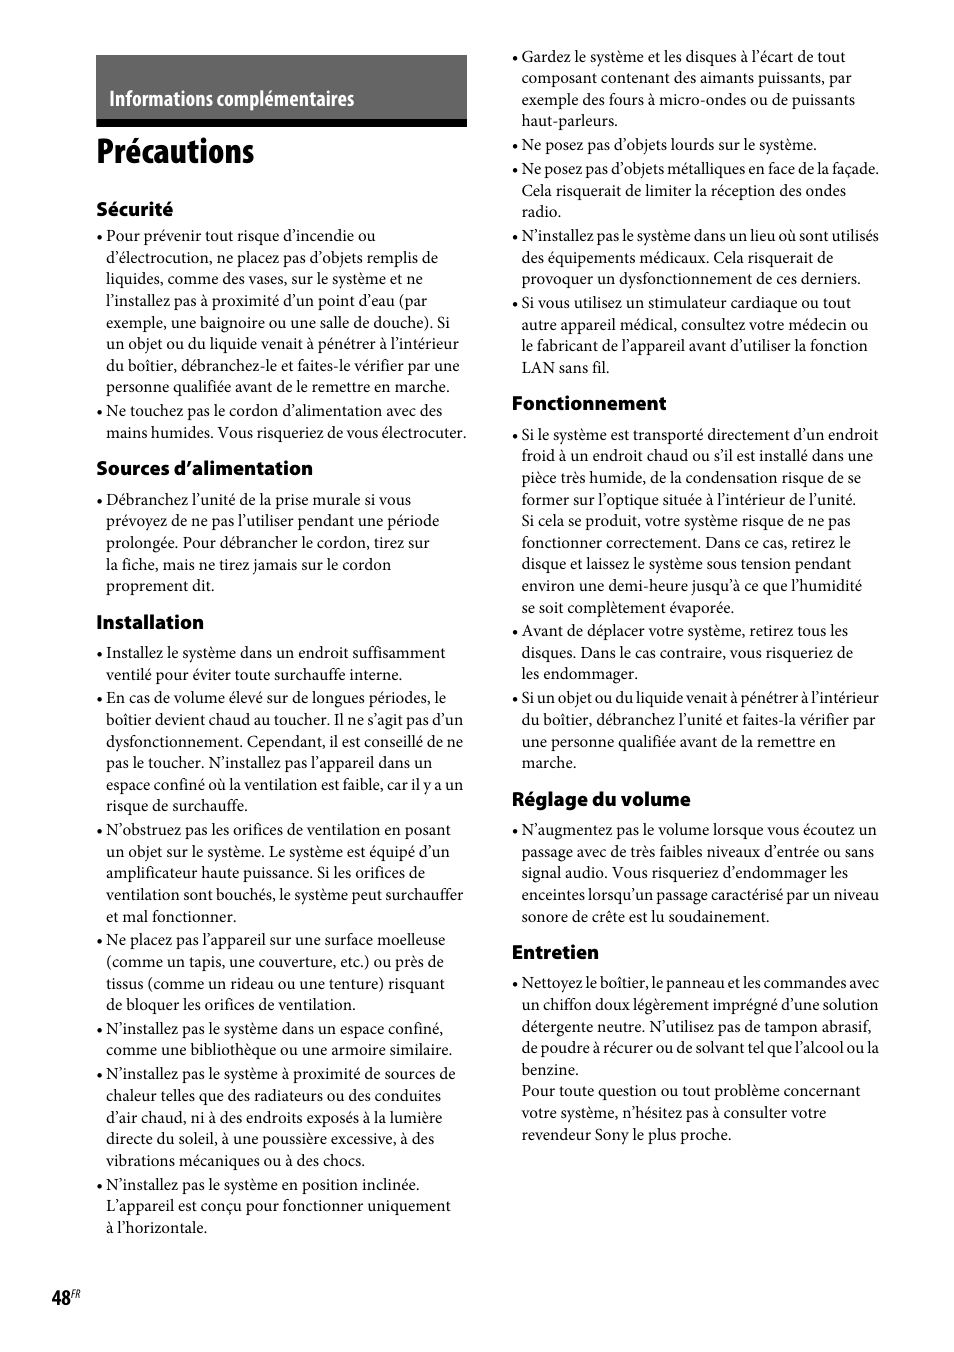 Informations complémentaires, Précautions | Sony BDV-E190 Manuel d'utilisation | Page 48 / 60